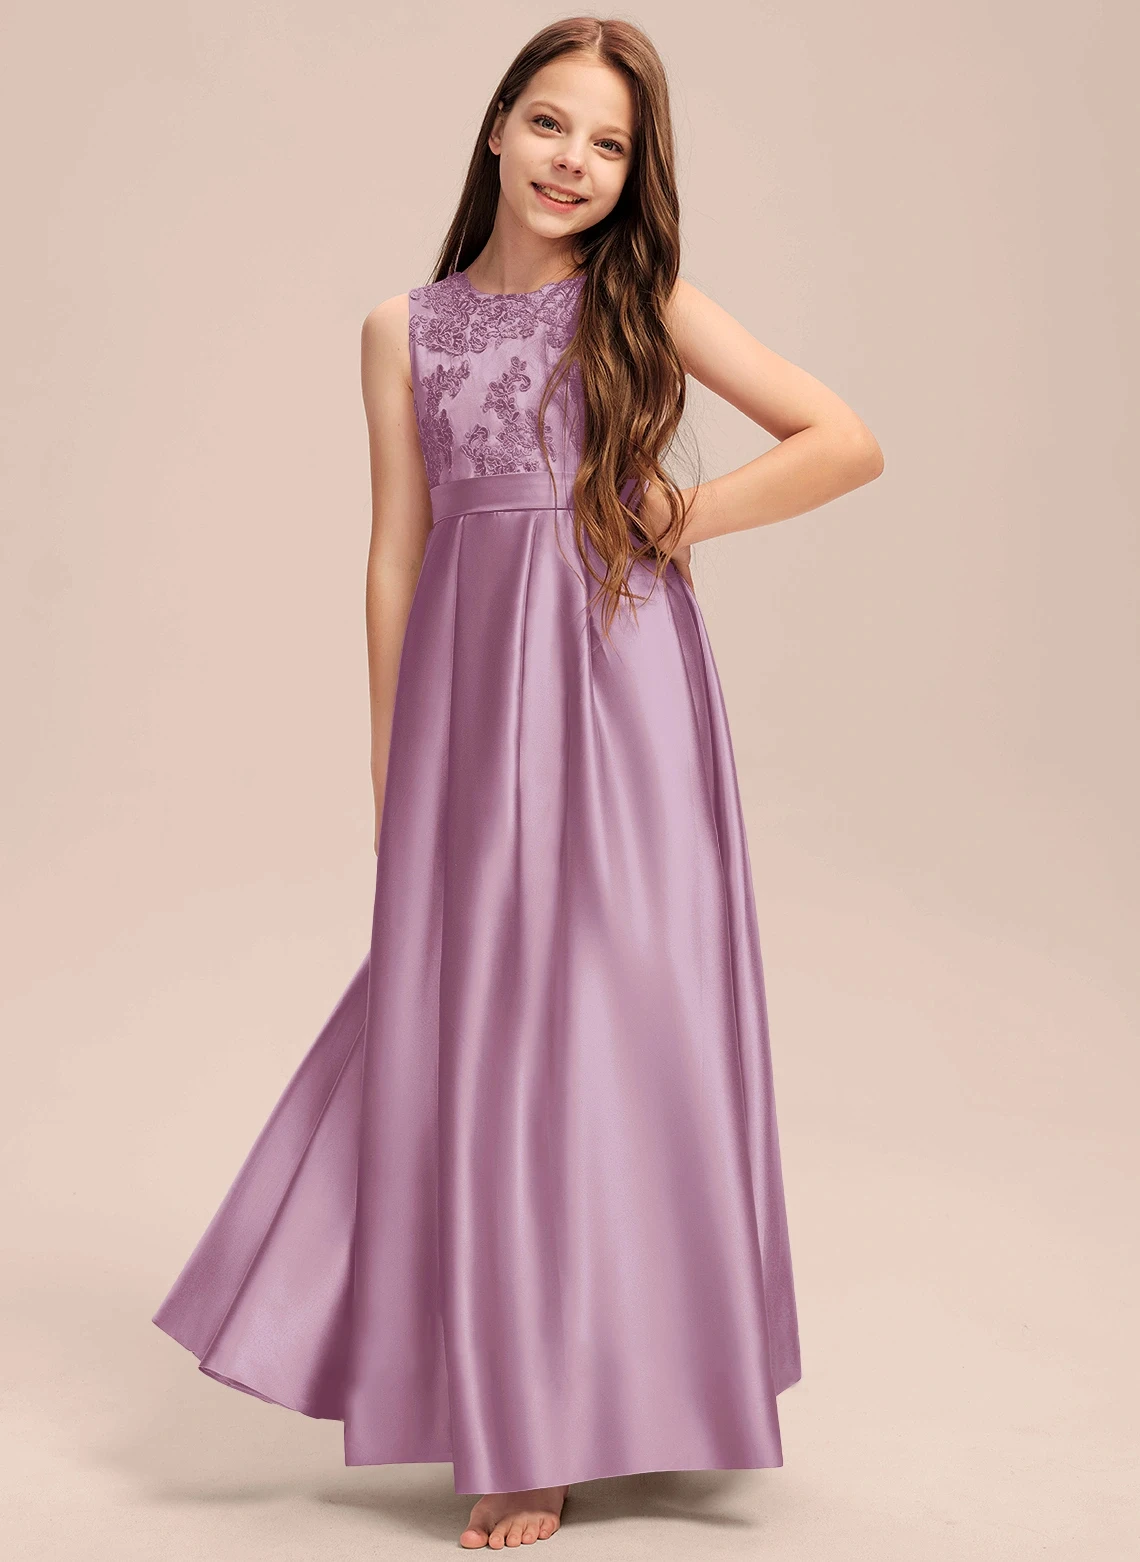 

Бальное платье/платье принцессы длиной до пола, кружевное атласное платье для подружки невесты с плиссированным цветочным принтом, платье для девочки